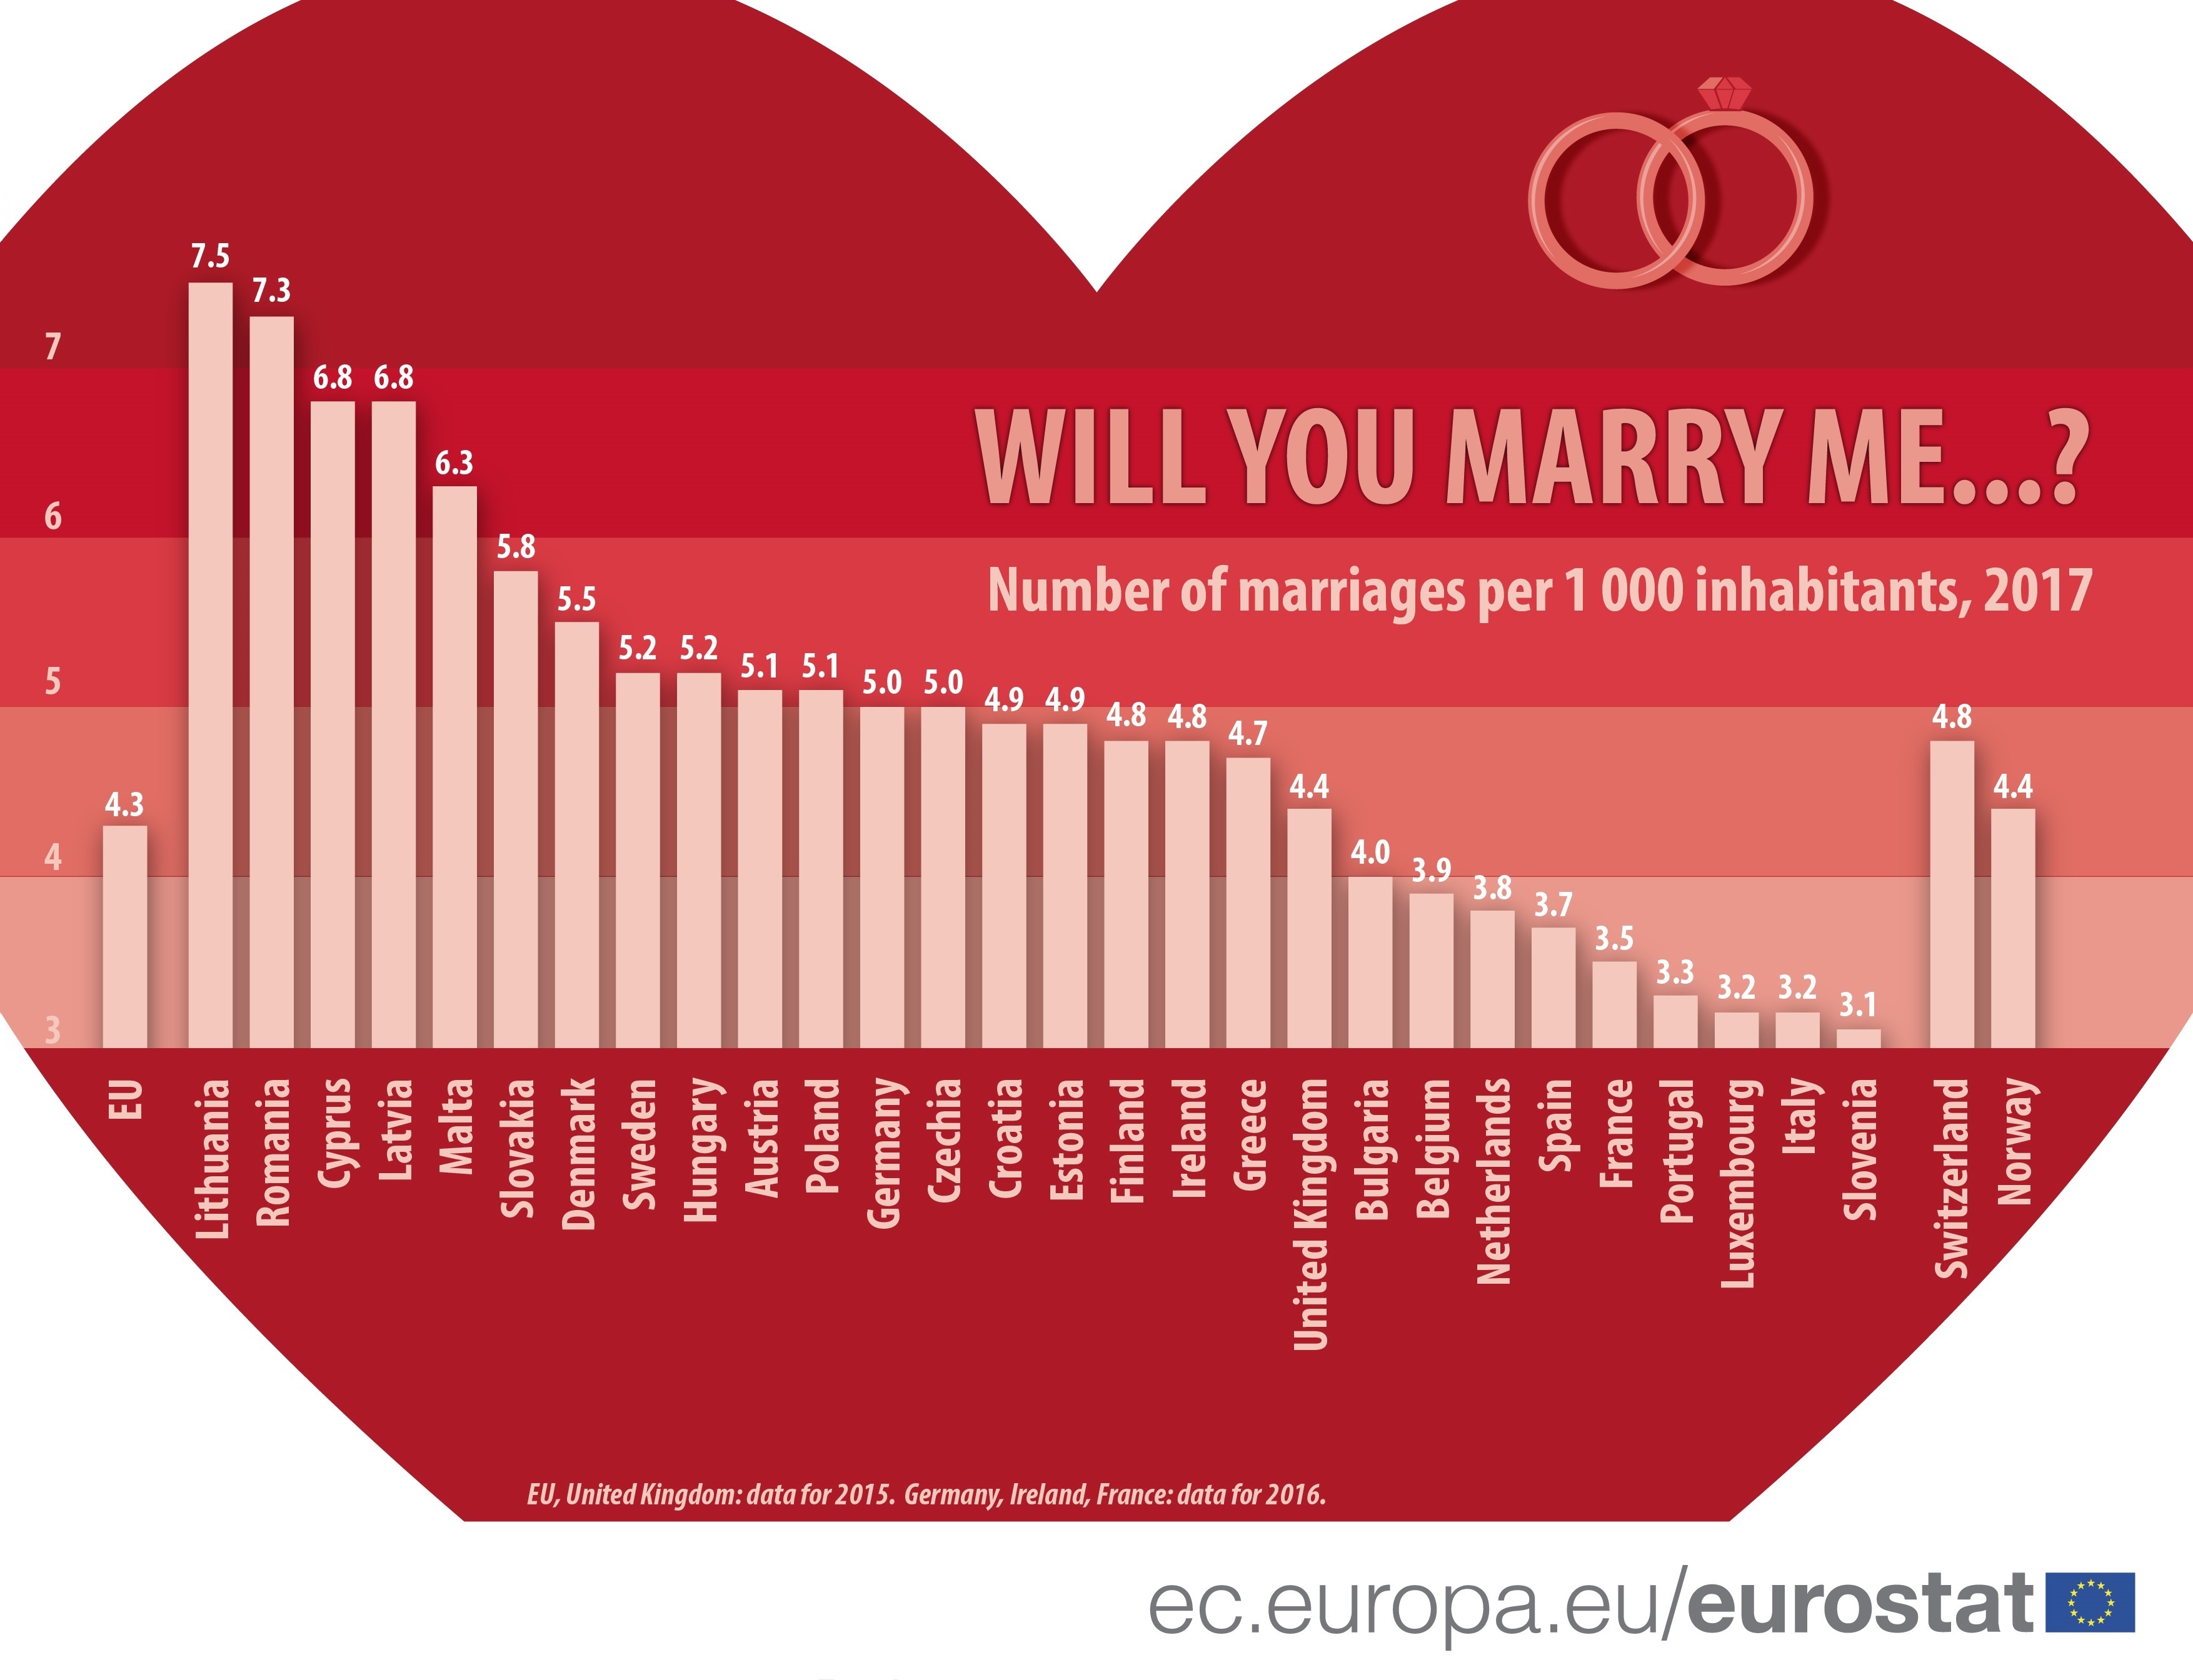 Najviše brakova u EU sklapa se u Litvaniji, najmanje u Sloveniji - Srbija u sredini 2